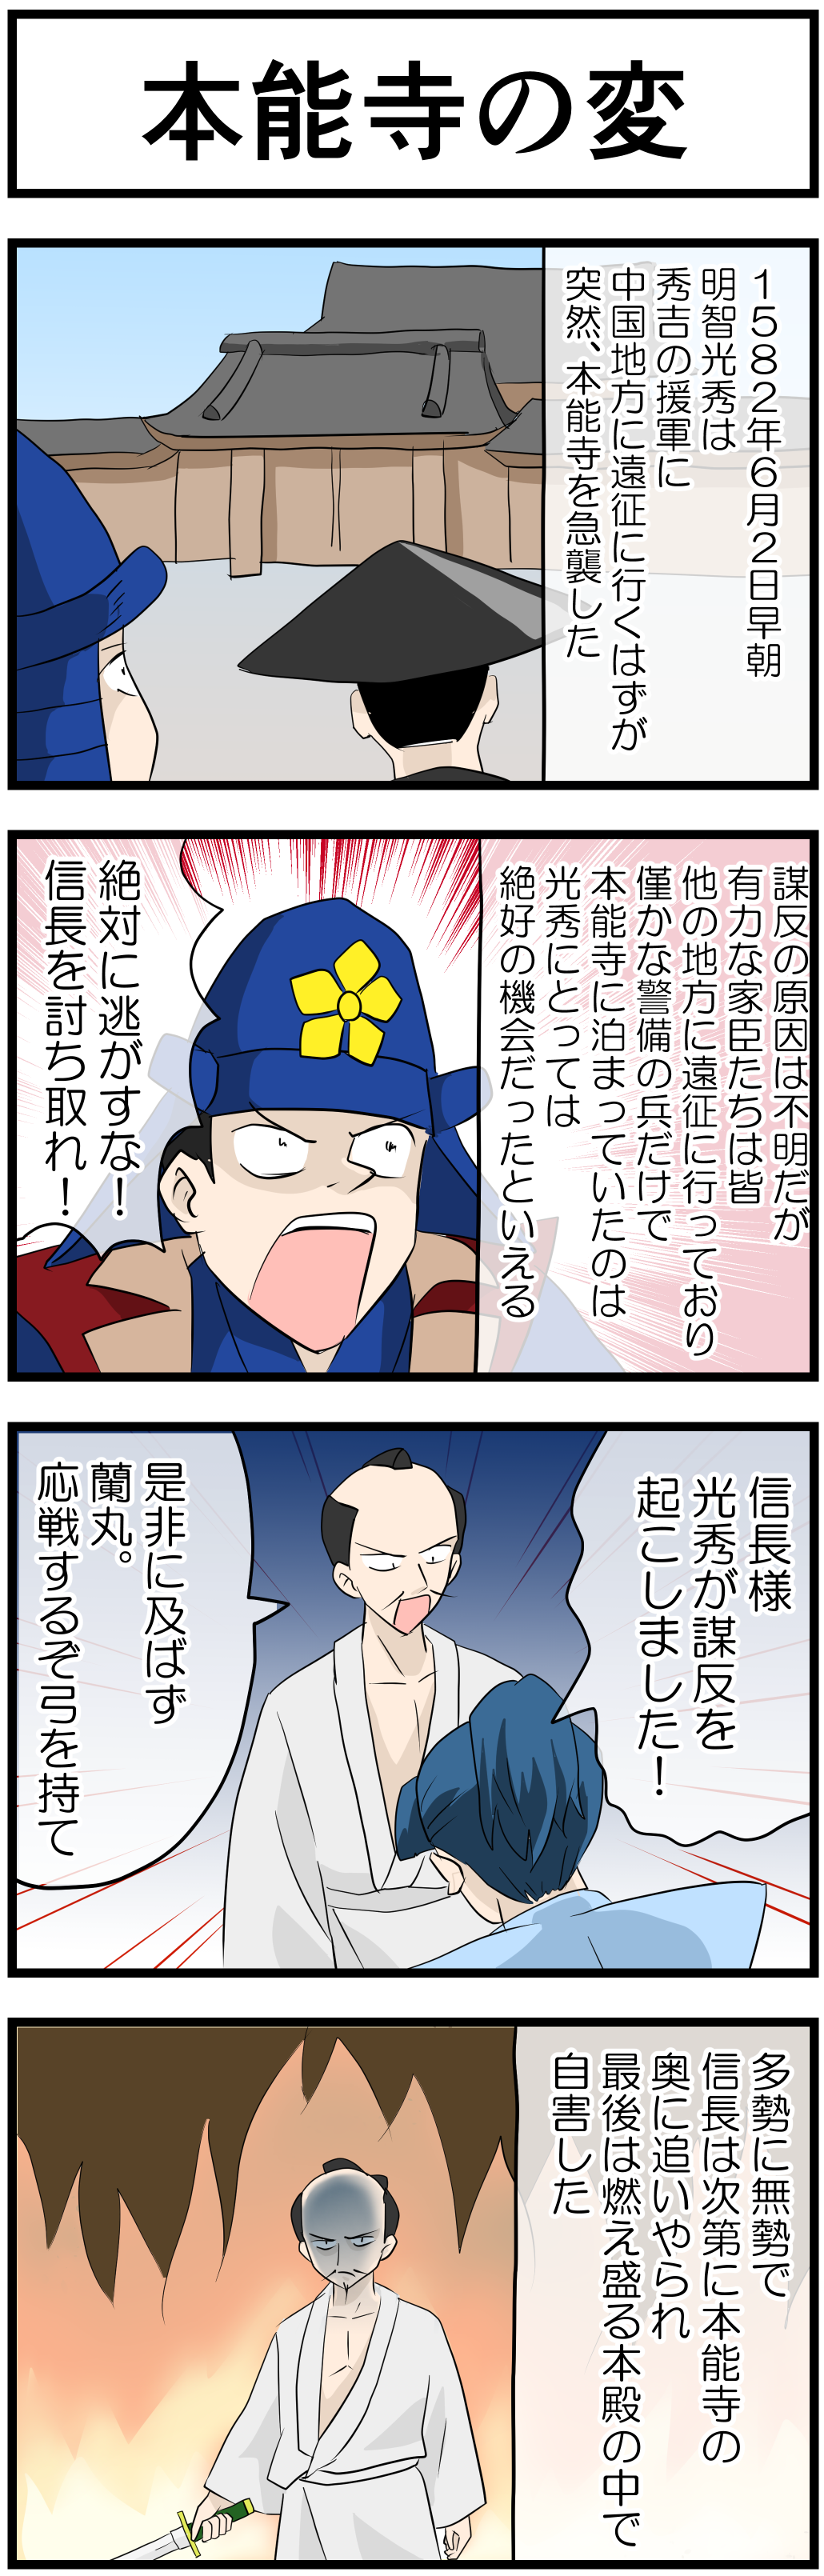 織田信長の一生 4コマ漫画で歴史の勉強 Novita 勉強法